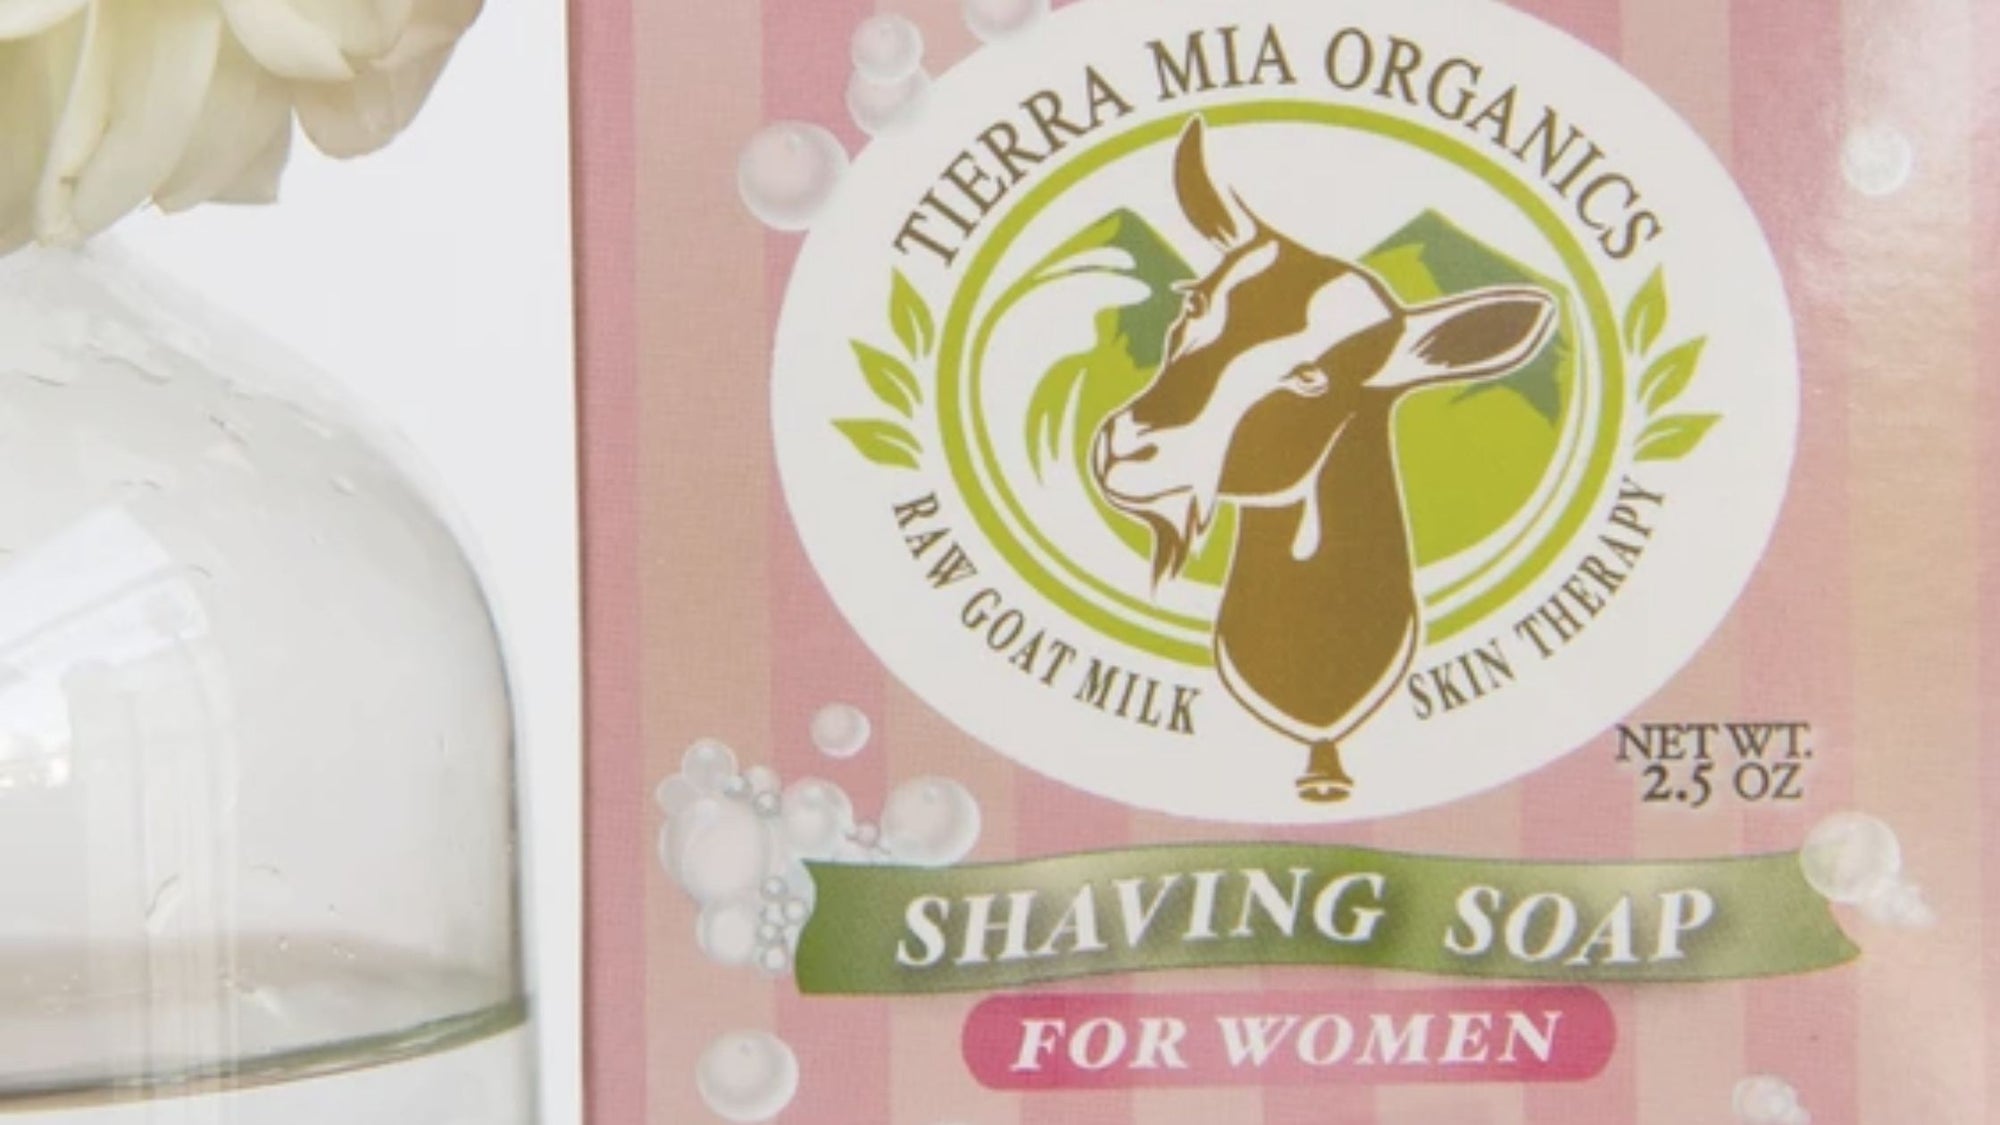 A Soapy Story: Organic Shaving Soap Bars For Women - Tierra Mia Organics